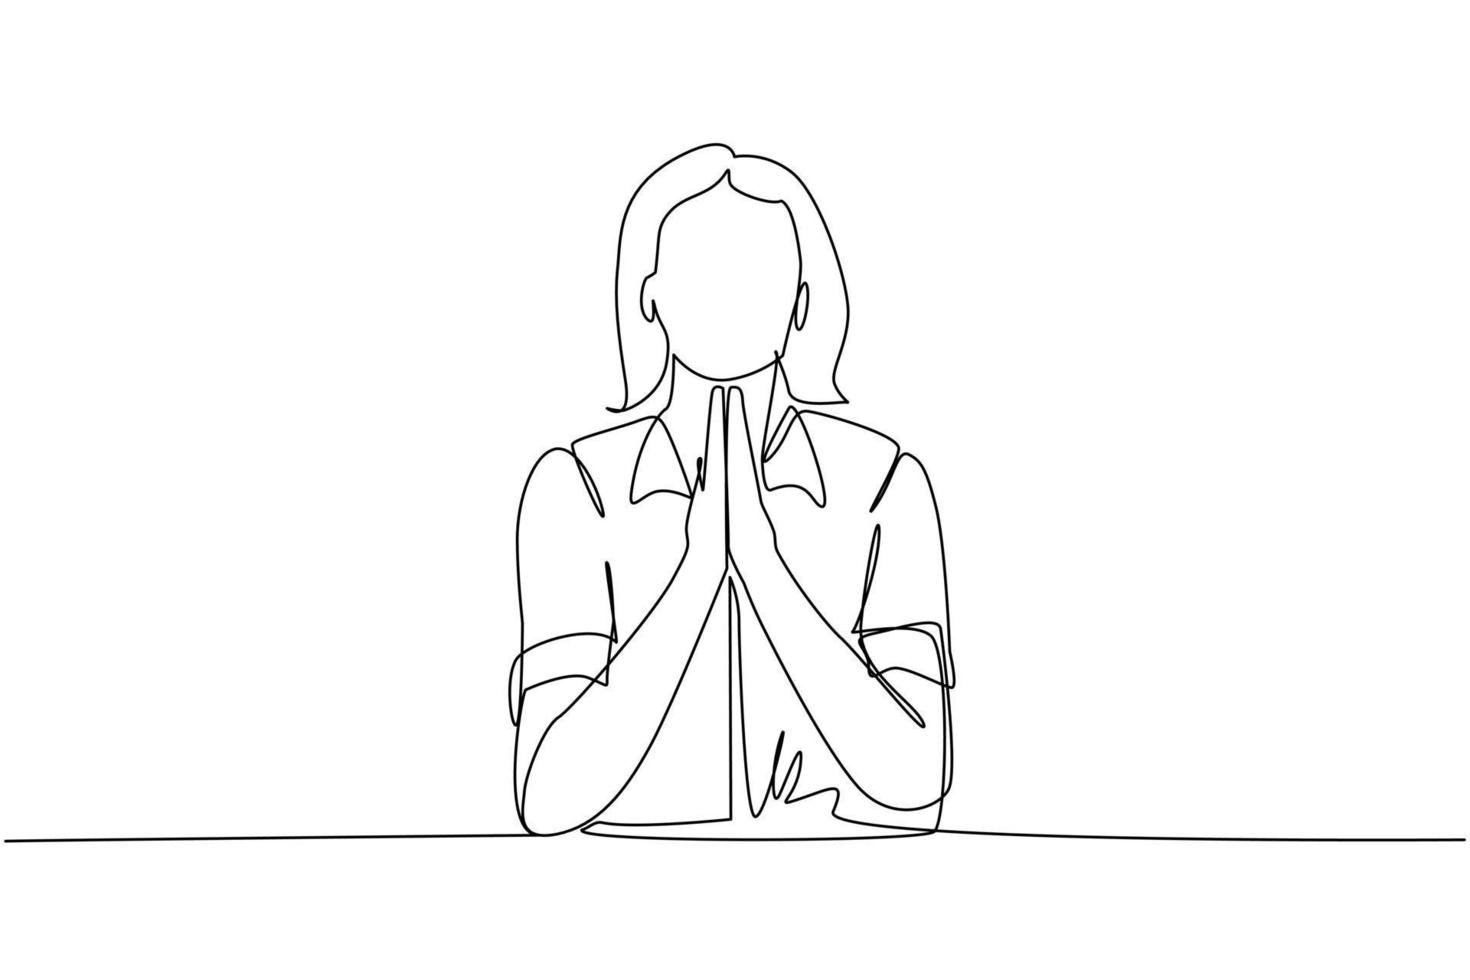 una línea continua dibujando a una mujer joven con los ojos cerrados rezando con las manos juntas. persona de moda sosteniendo las palmas en oración. emoción humana, lenguaje corporal. ilustración gráfica de vector de diseño de dibujo de una sola línea